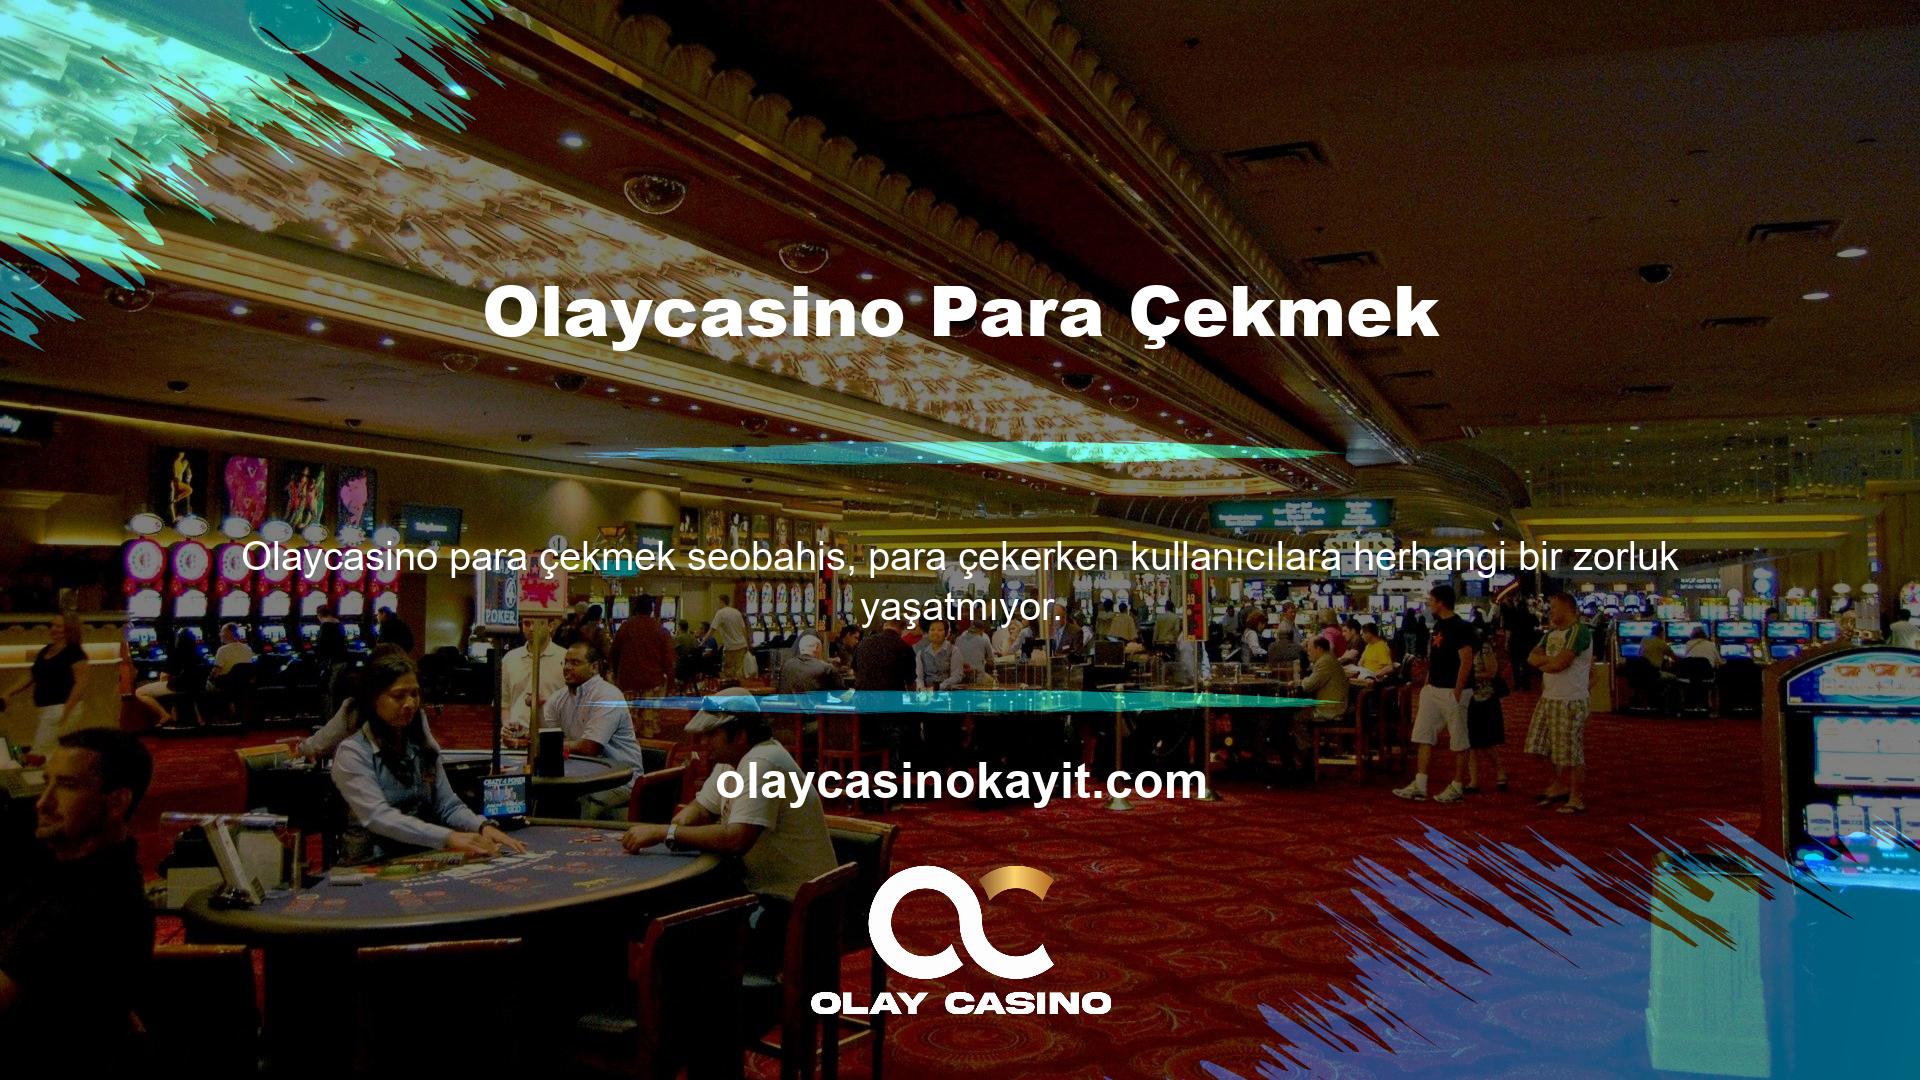 Çevrimiçi casino sitelerinden alınan Olaycasino, birçoğunun üyelerinden para çekmek için tacize başvurduğunu ortaya koyuyor